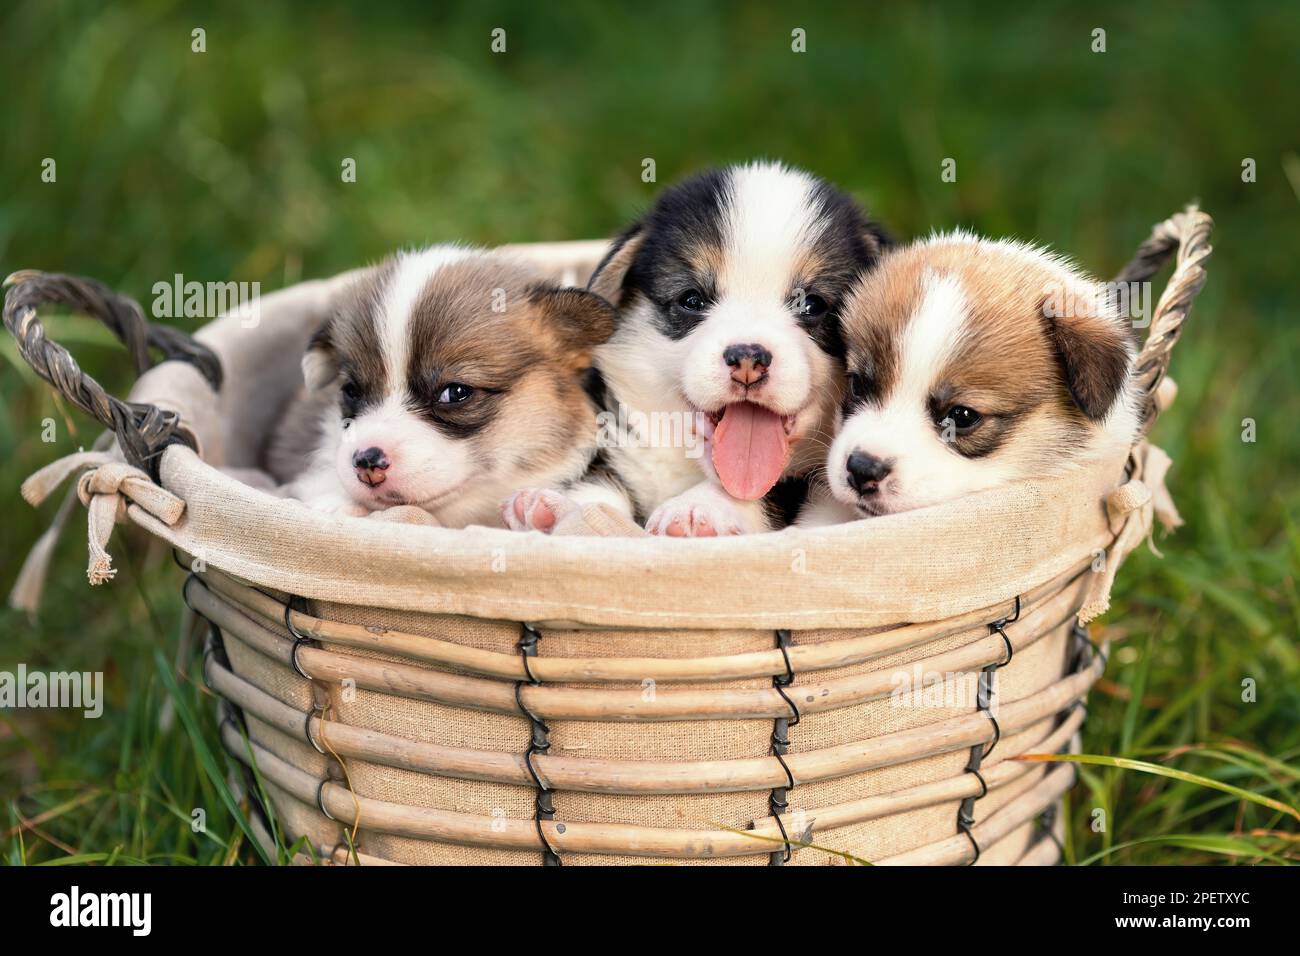 Trois petits chiots heureux de corgi gallois pembroke race chien assis ensemble dans le panier dans la nature Banque D'Images